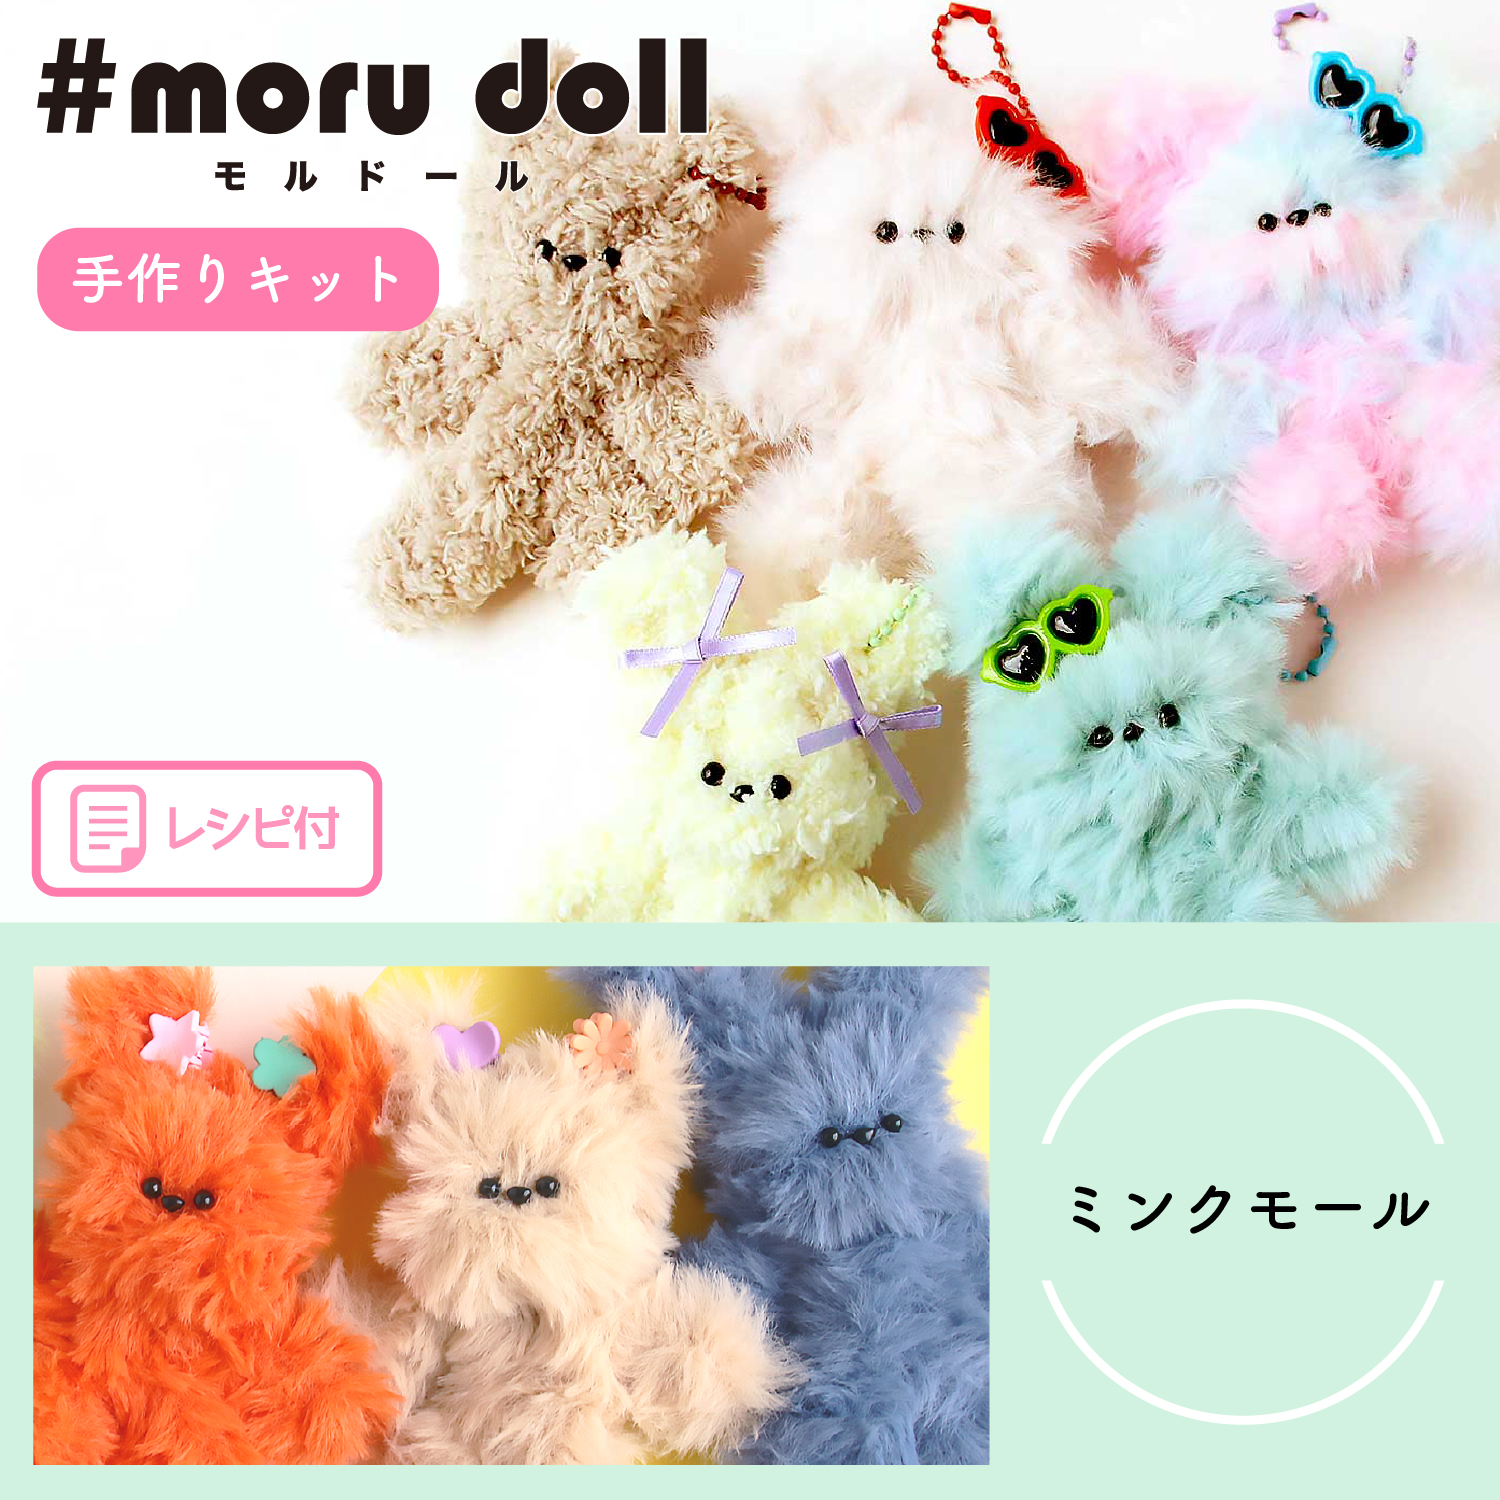 MOL-KIT モール人形 モールドール キット 定番ぬいぐるみタイプ ミンクモール (袋)